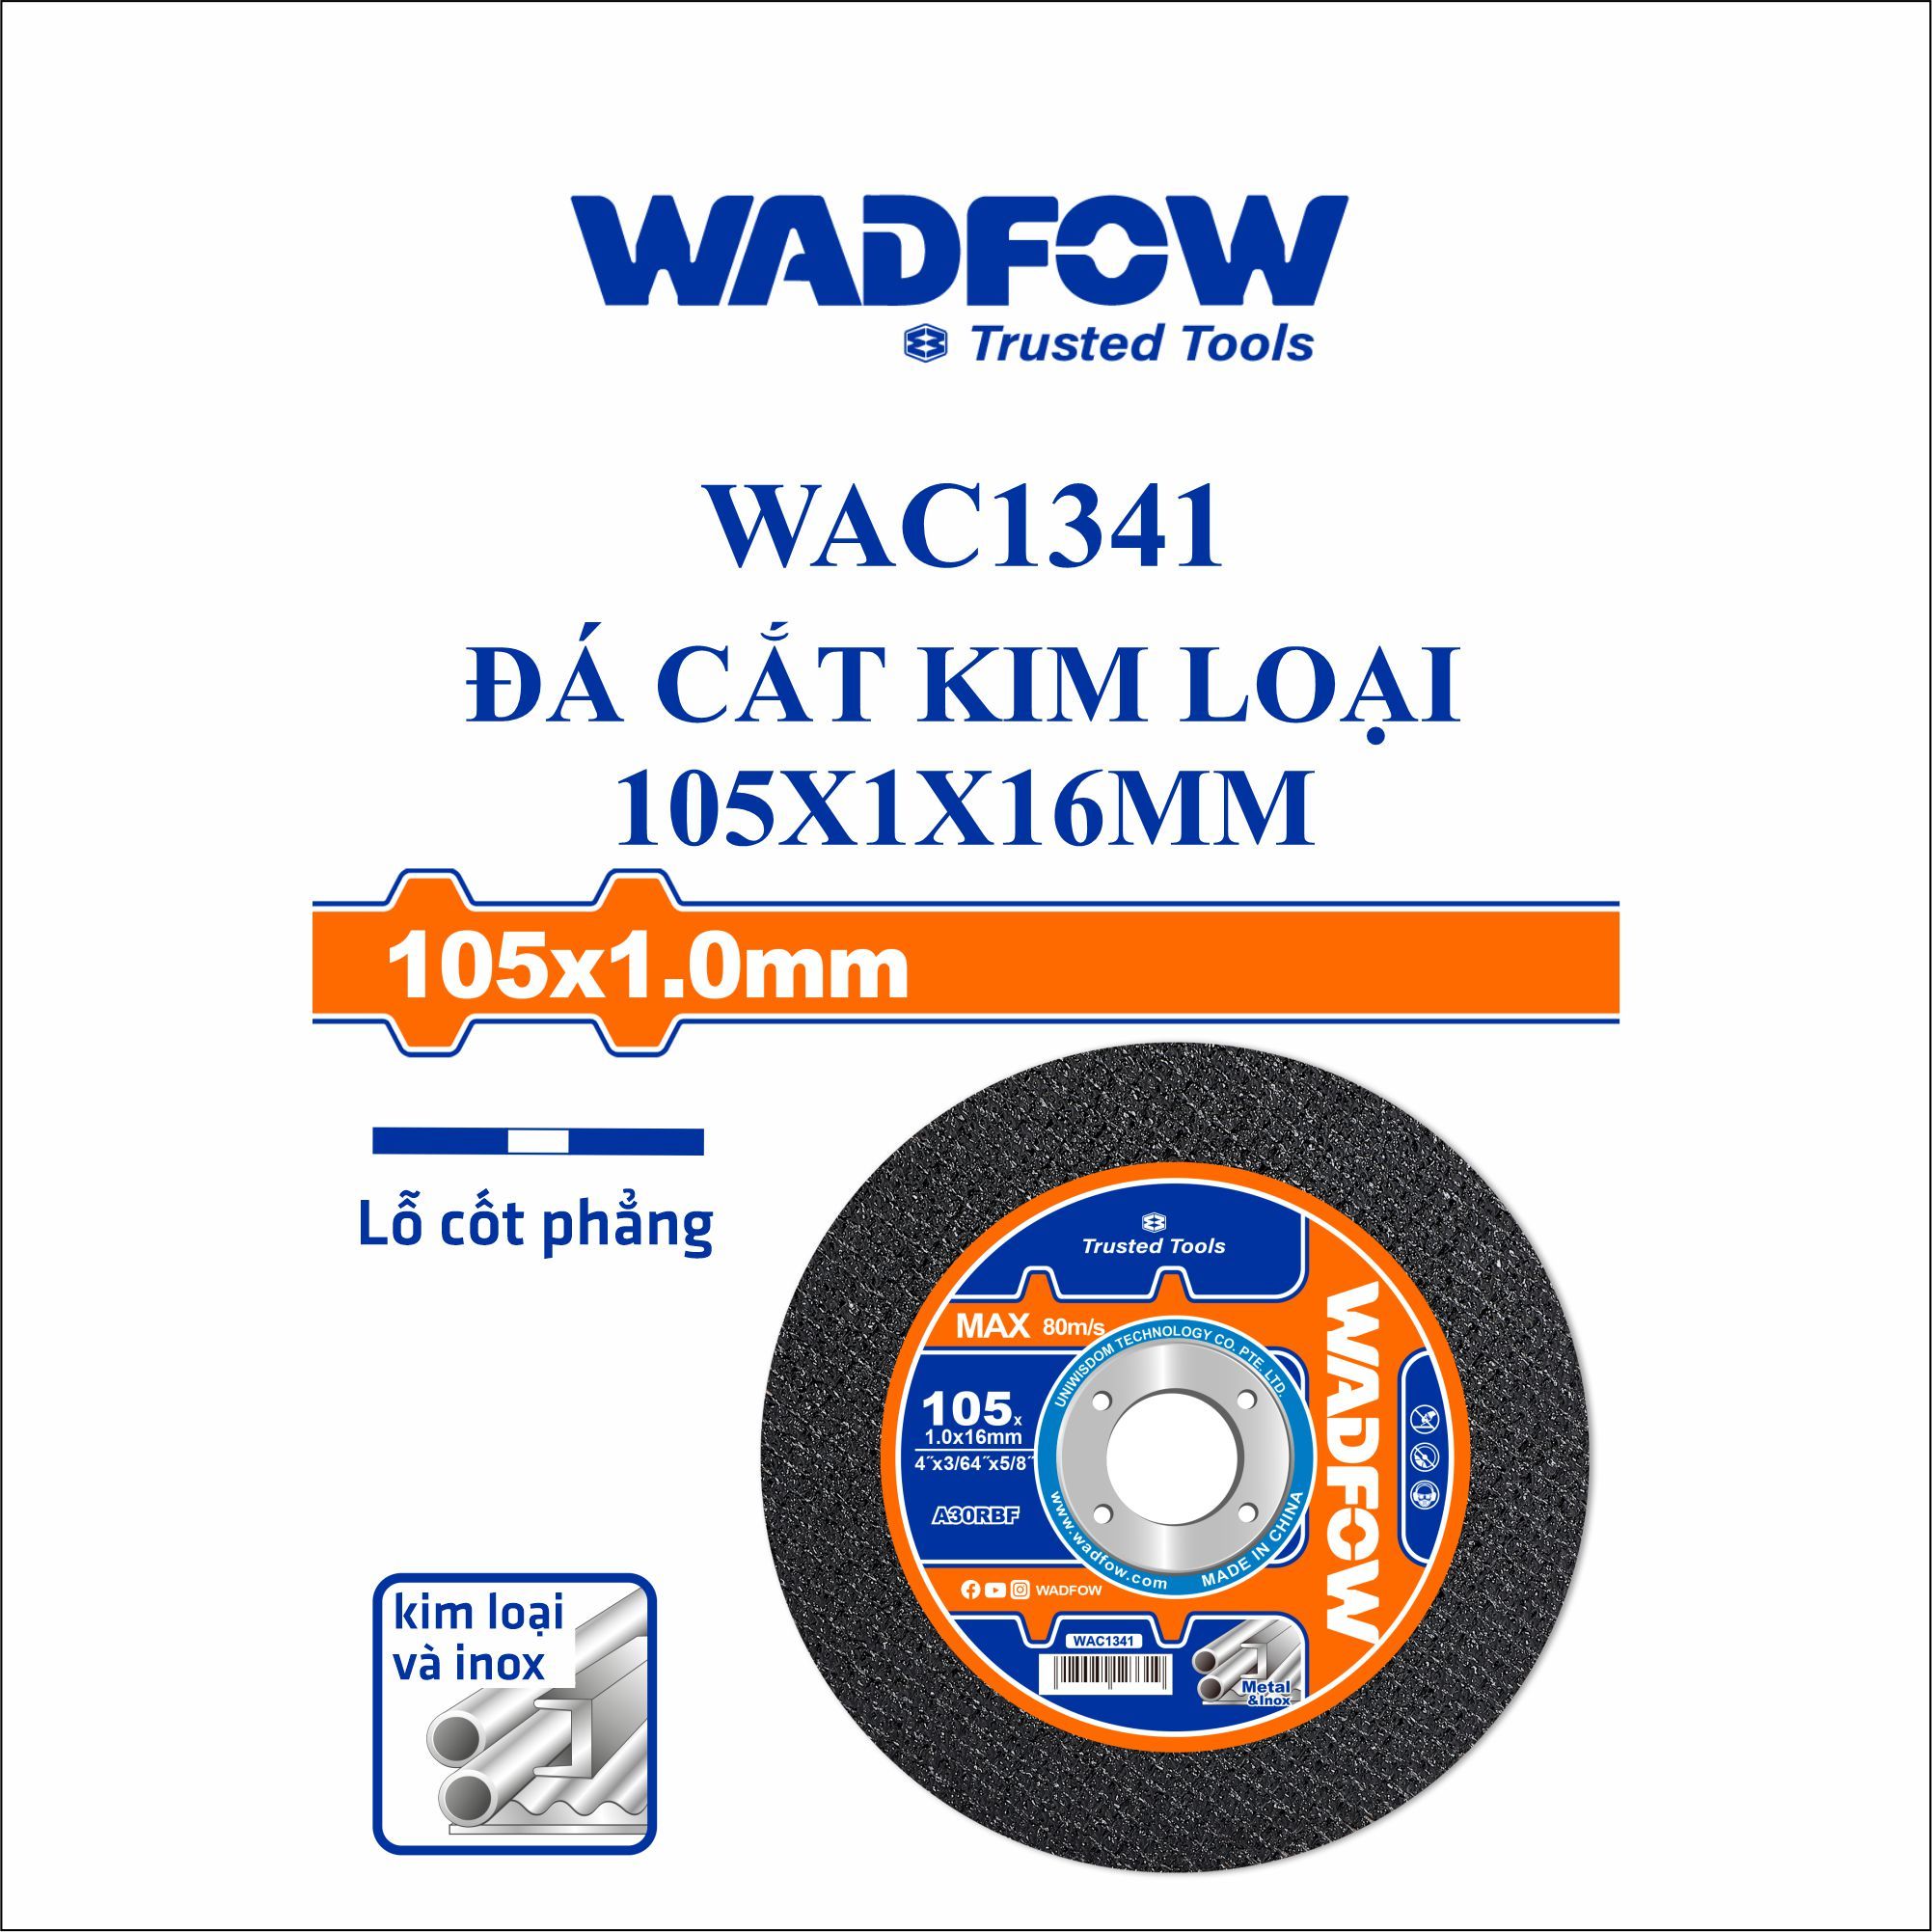  Đá cắt kim loại 105x1x16mm WADFOW WAC1341 